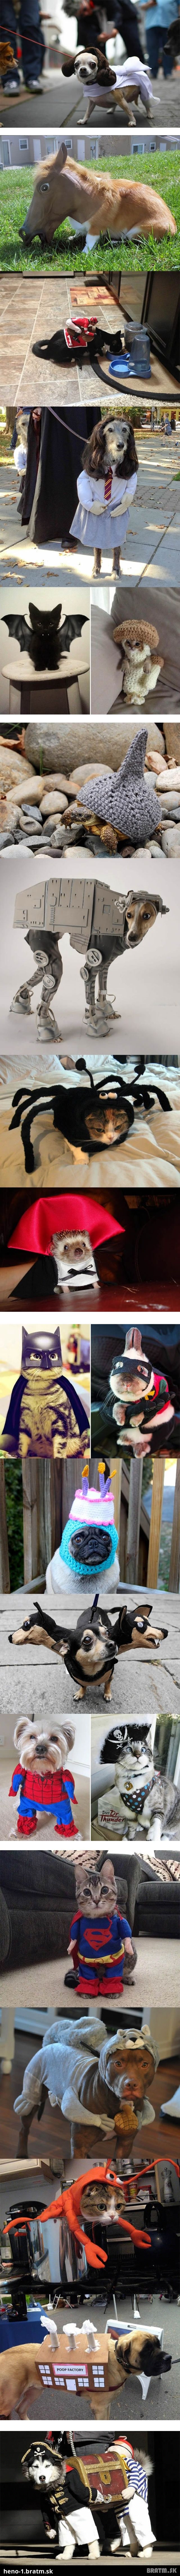 Desivo zábavné kostýmy pre zvieratá :D (21 foto)